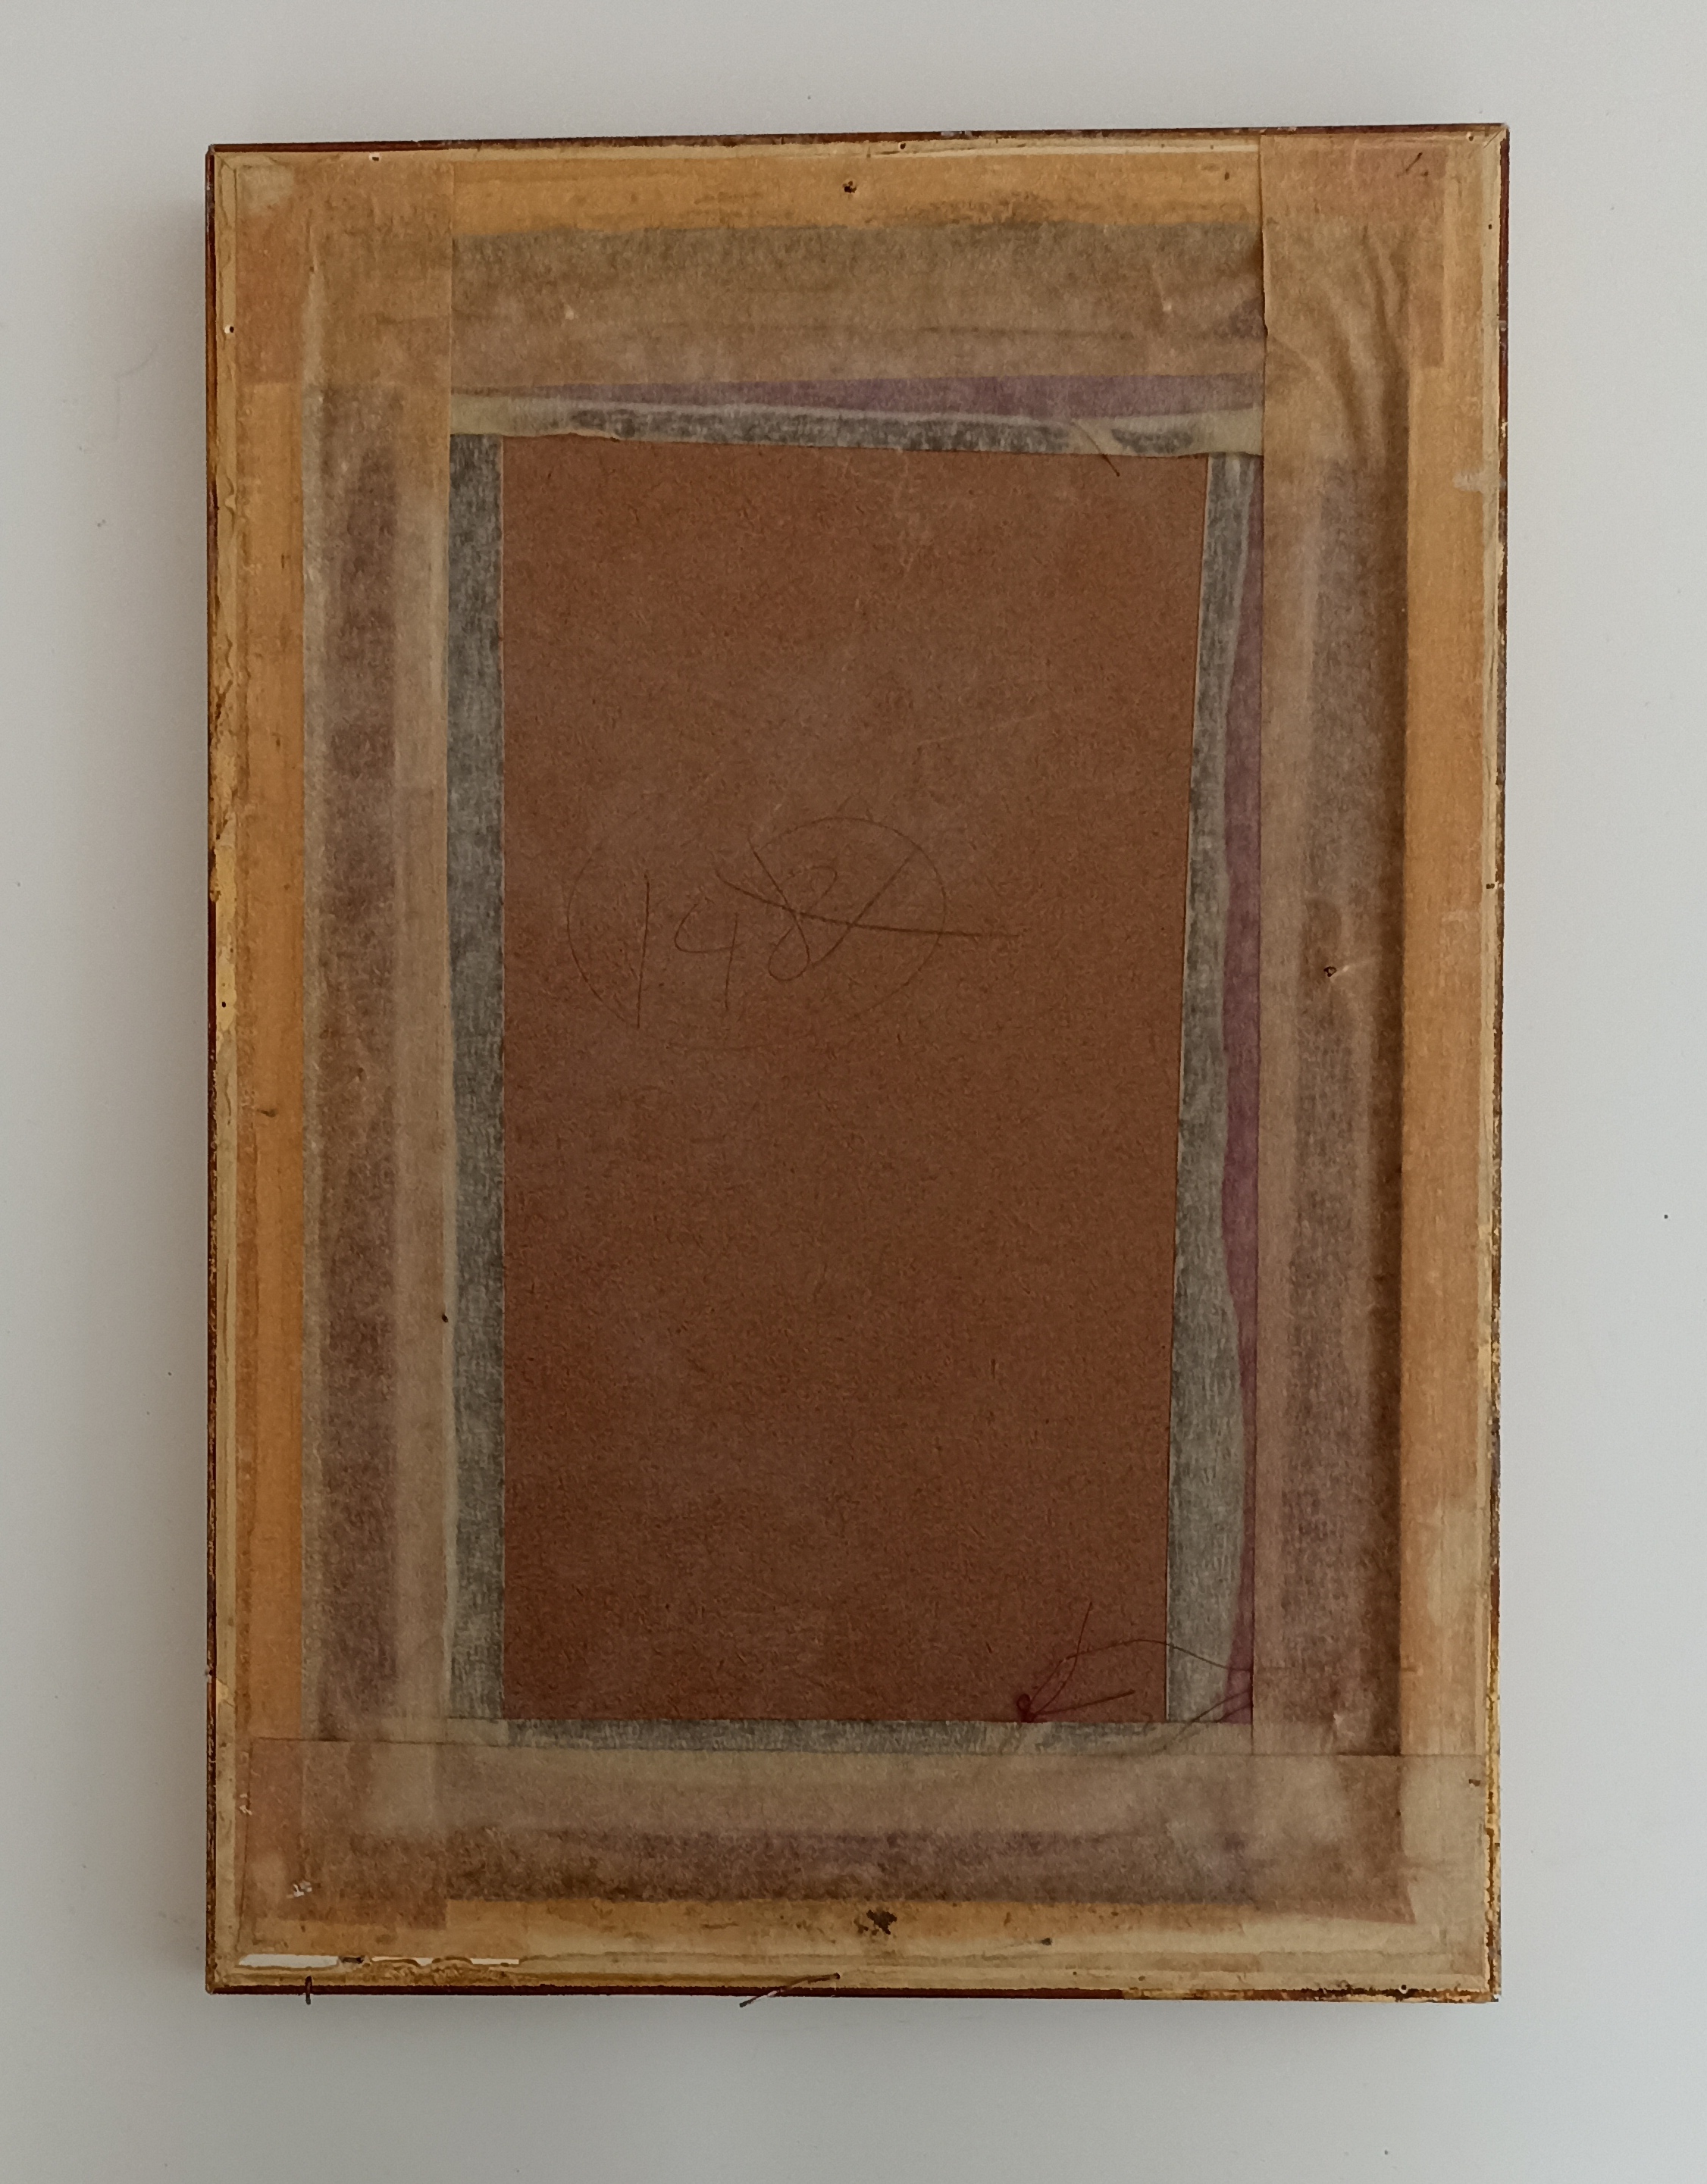 Bonito cuadro con marco de madera y cristal protector. 33x22,5 cm.